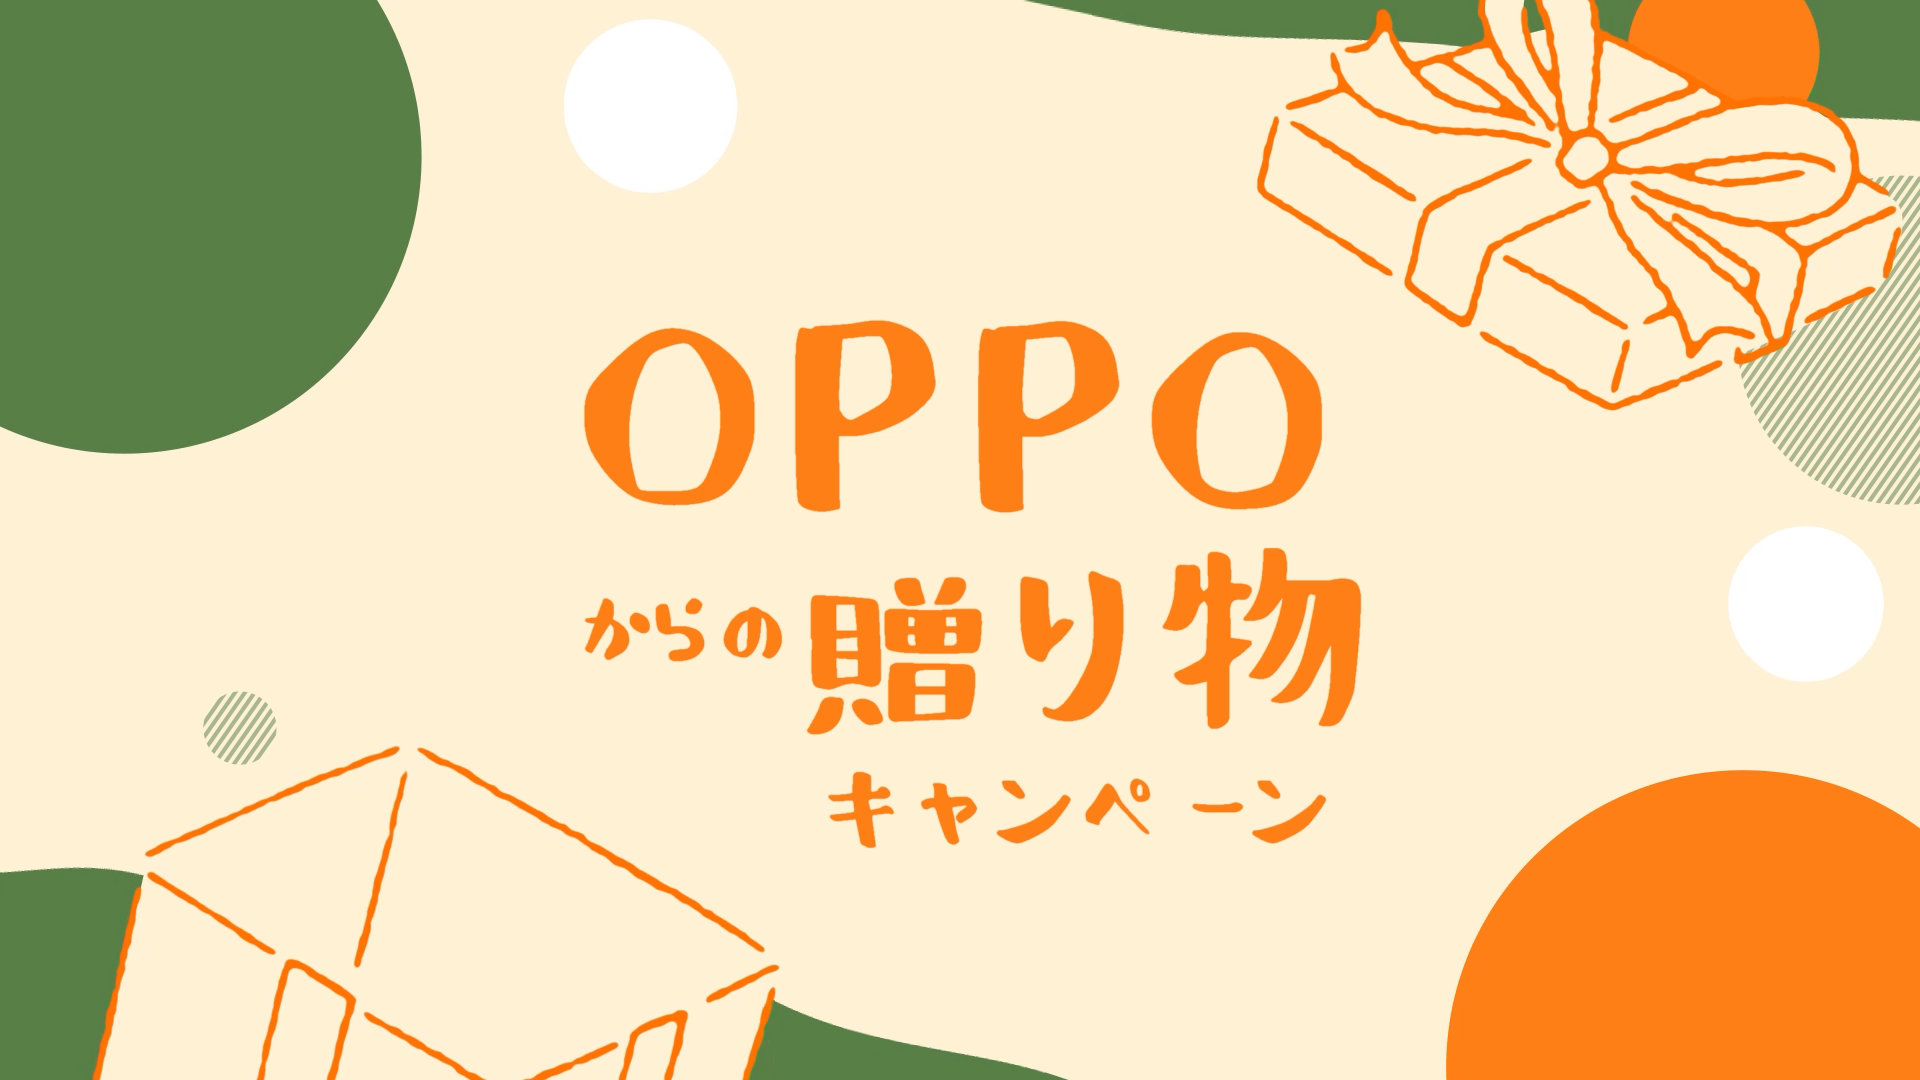 『 #OPPOからの贈り物 』Twitterキャンペーン